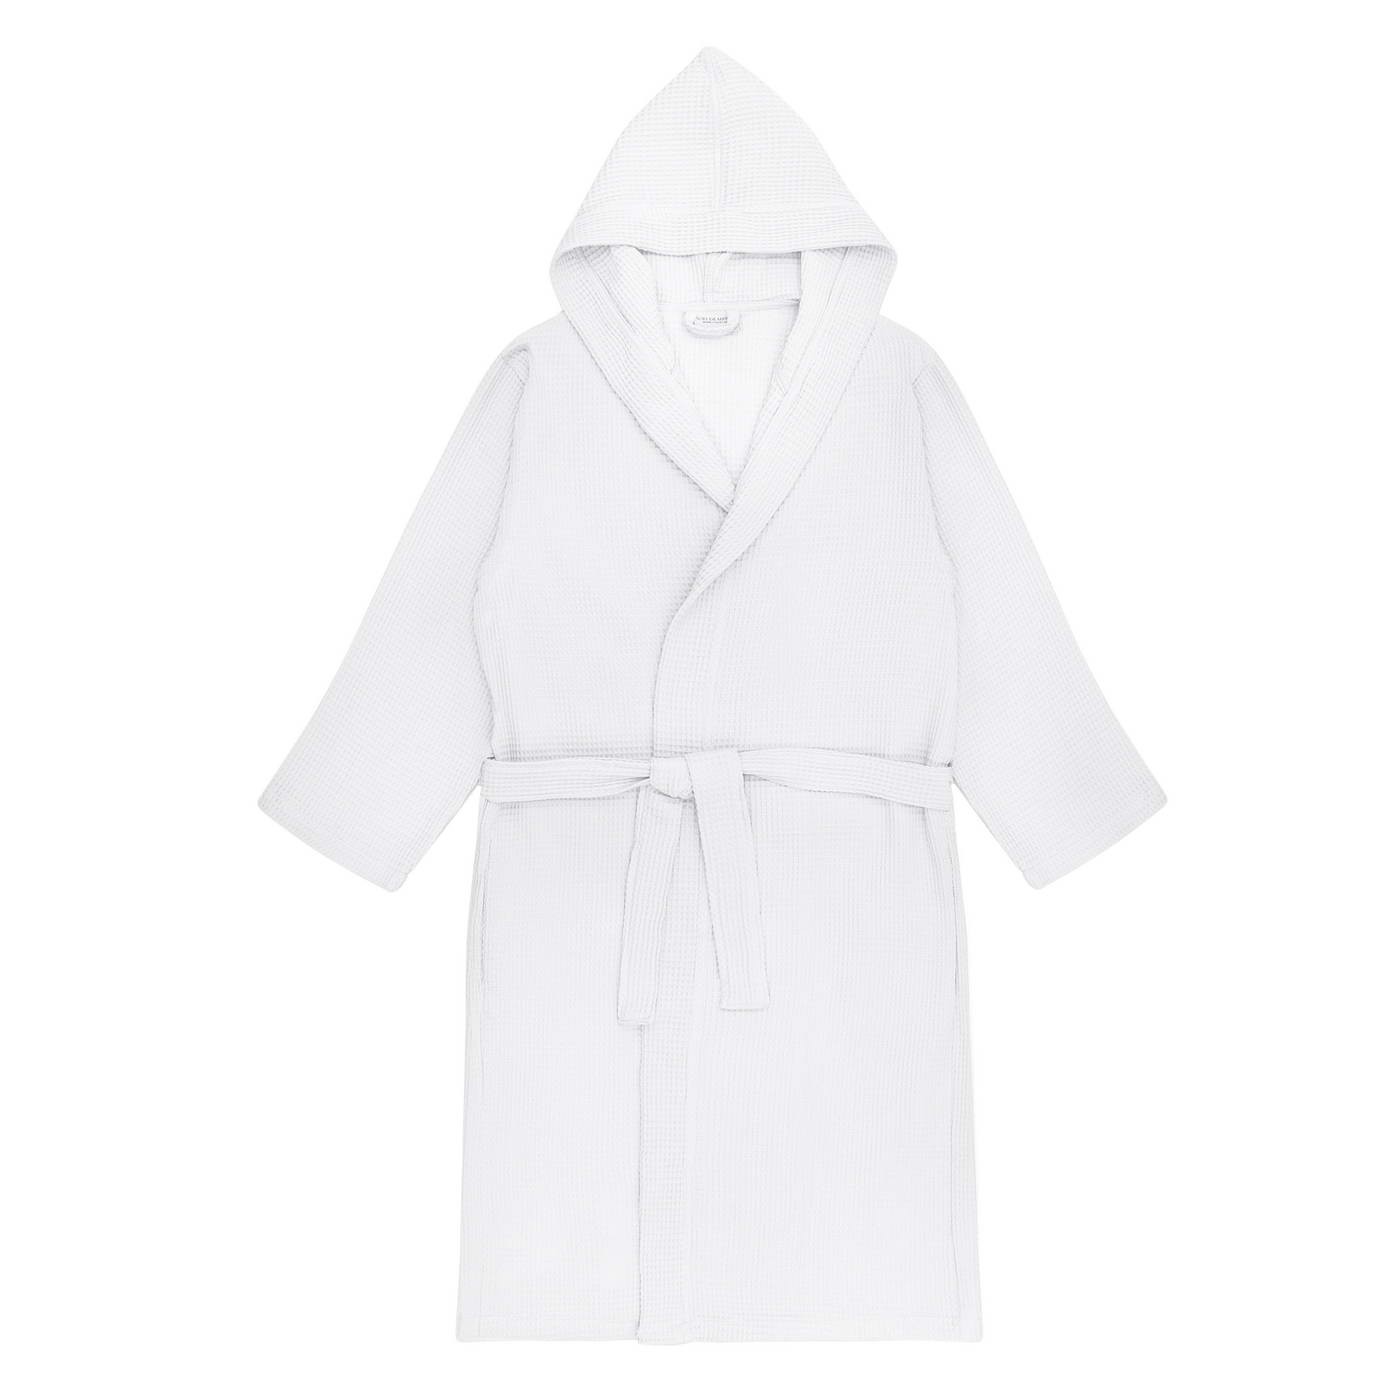 Банный халат Naomi цвет: белый (S)